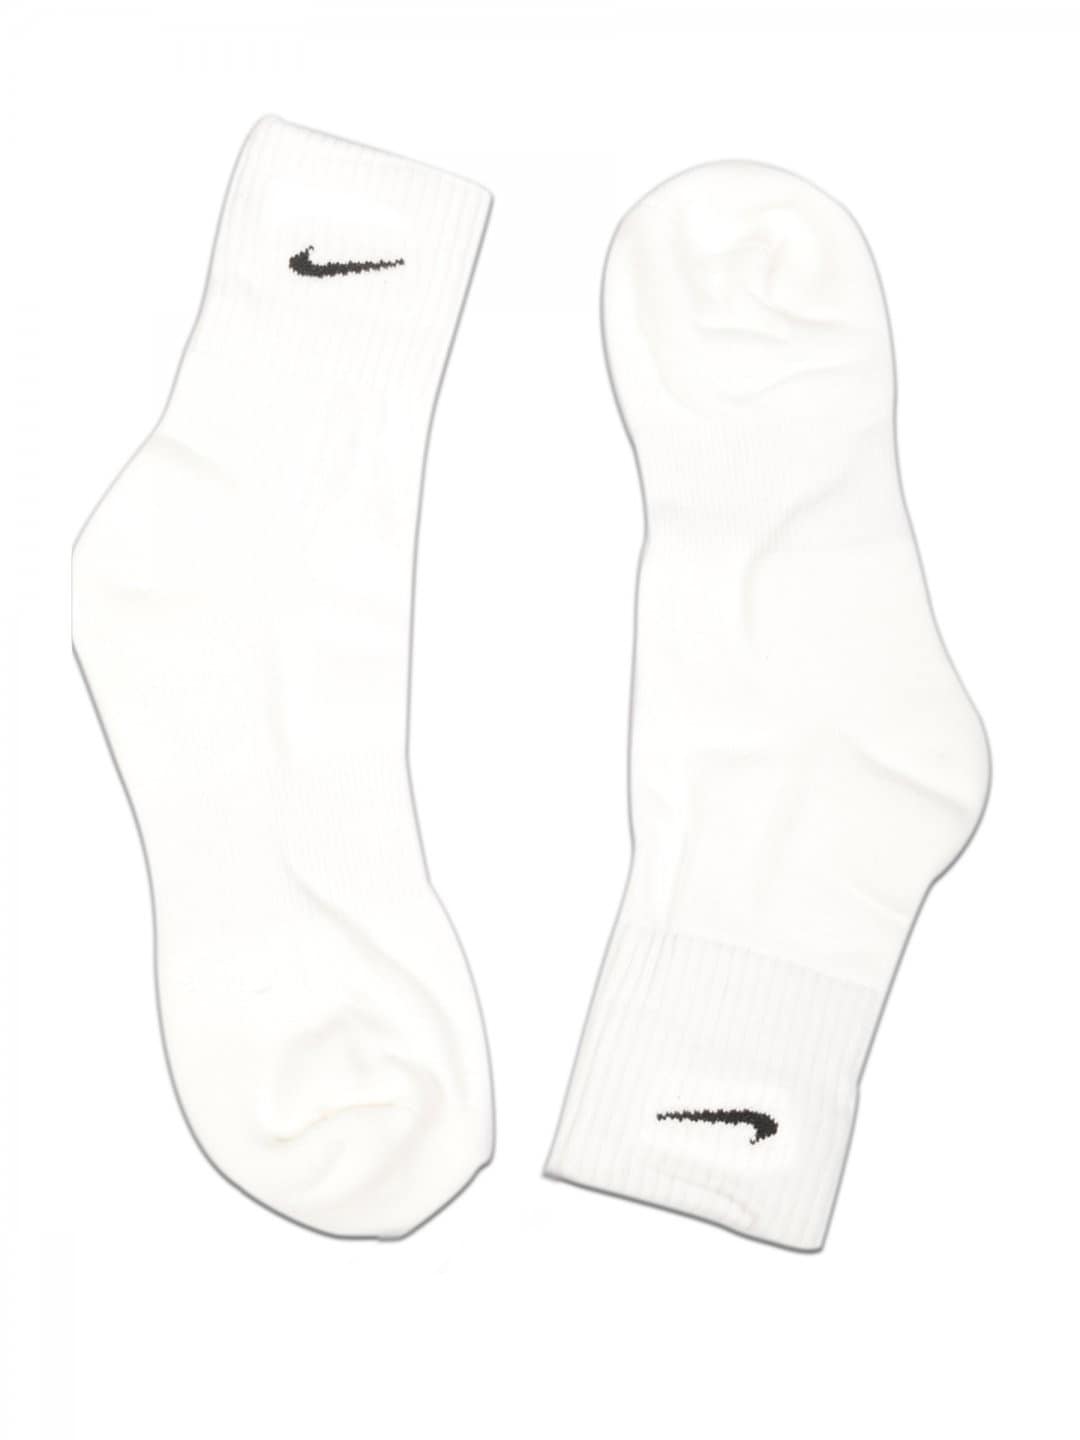 Nike Unisex China Swsh Ct White Socks